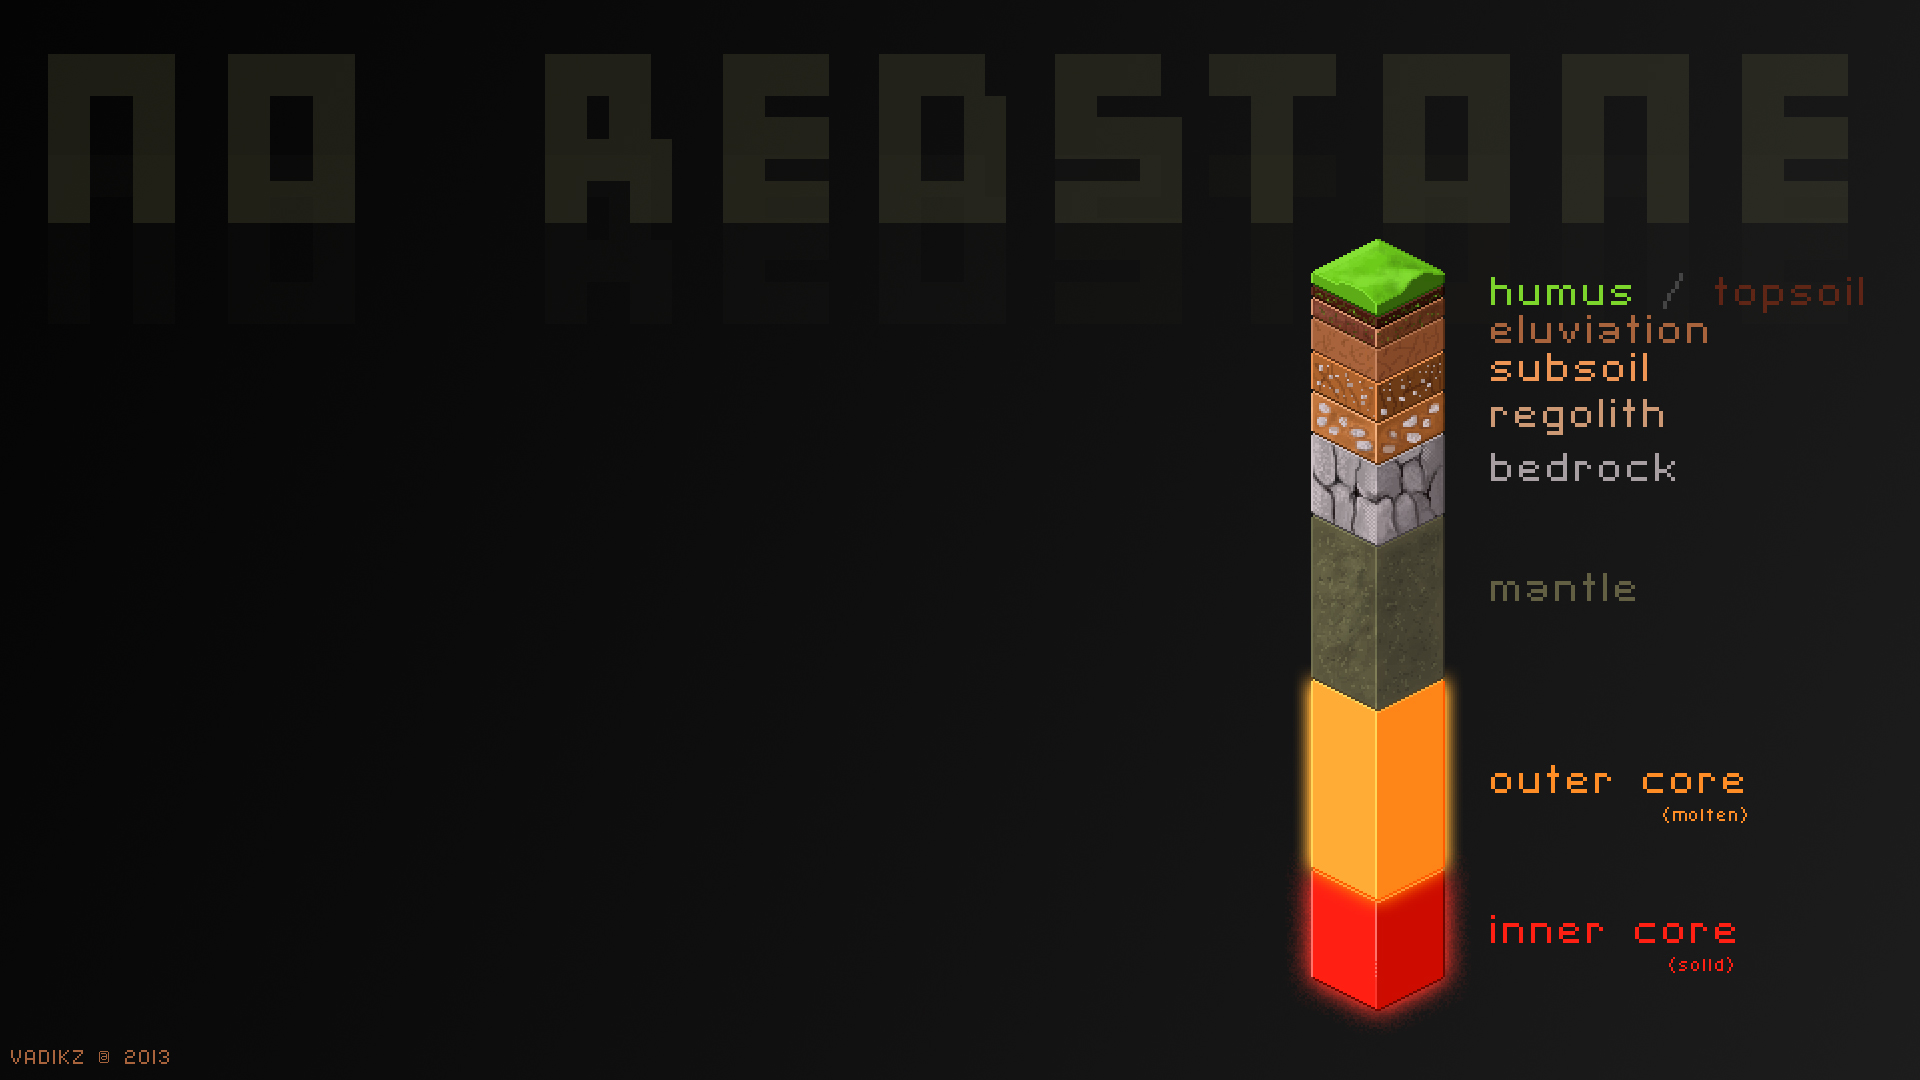 Minecraft Redstone Wallpaper